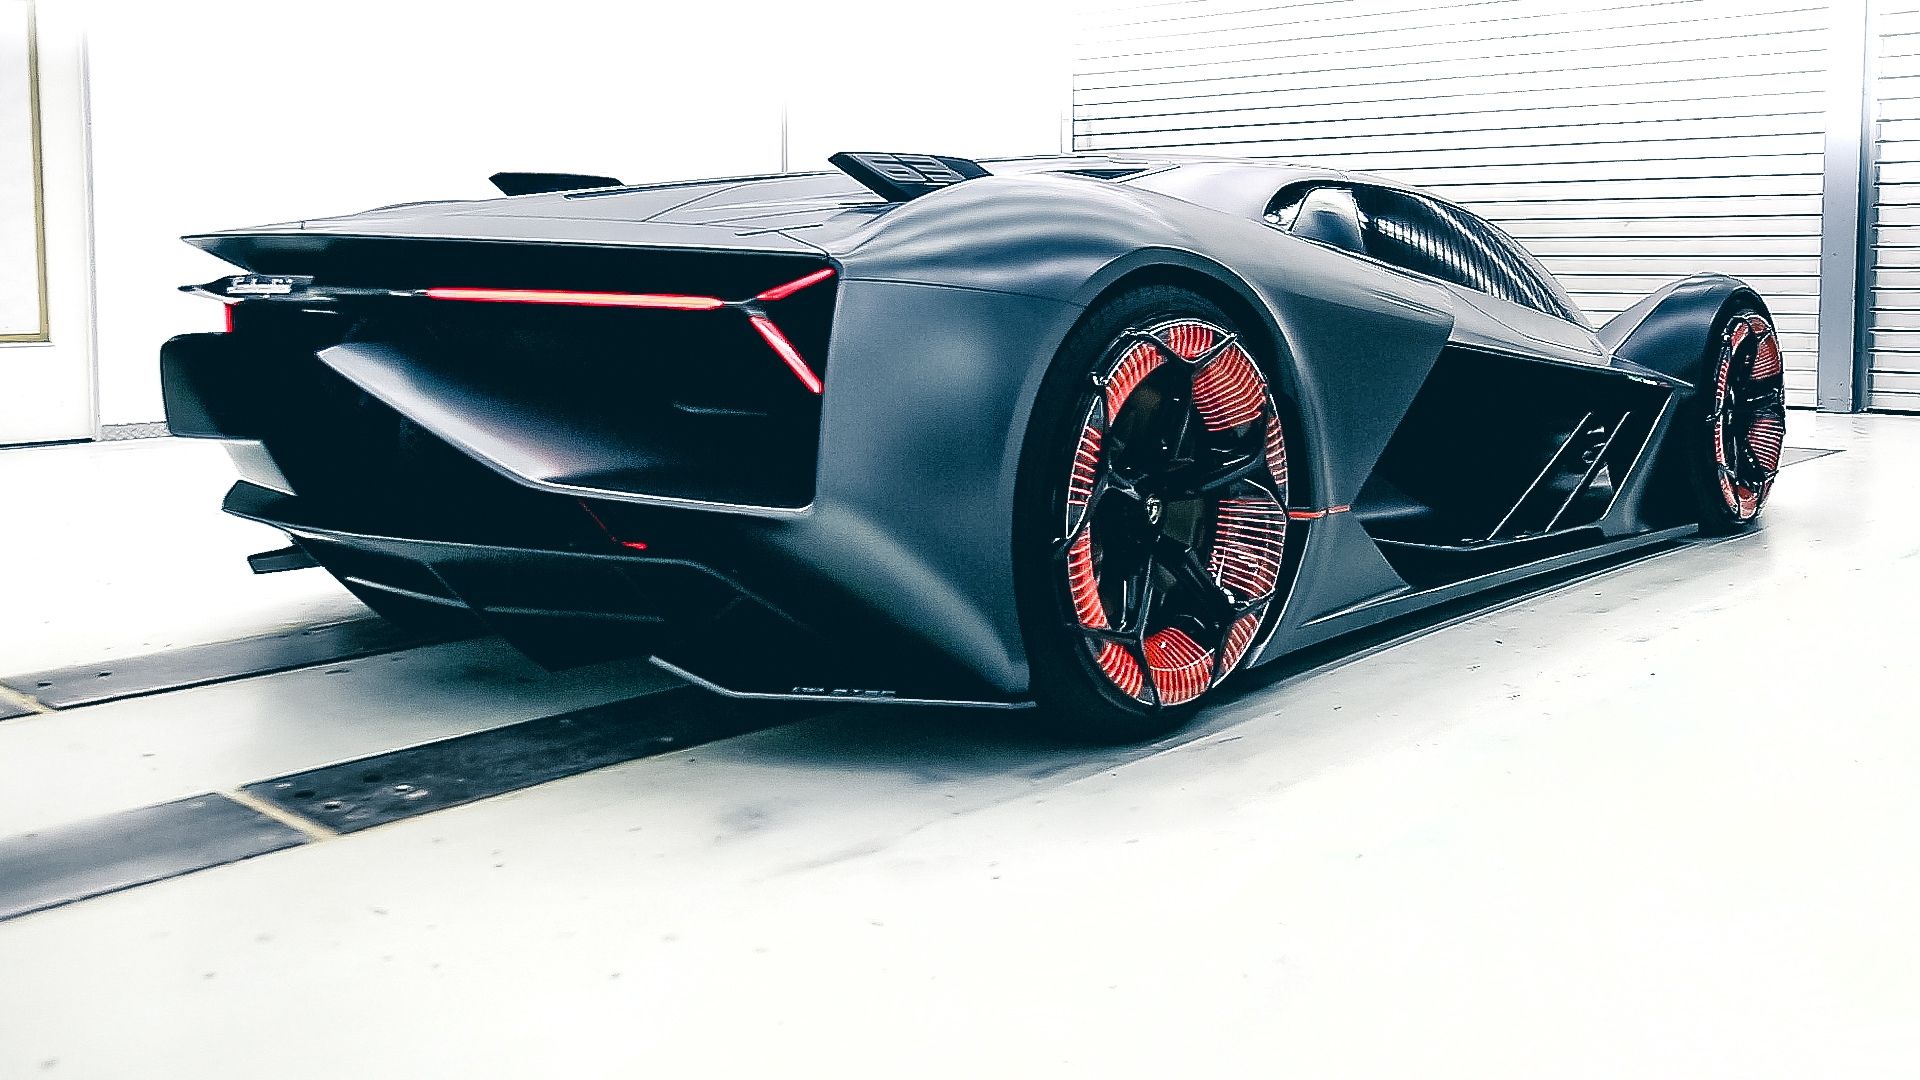 The Future of Lamborghini: The Lamborghini Terzo Millennio - The